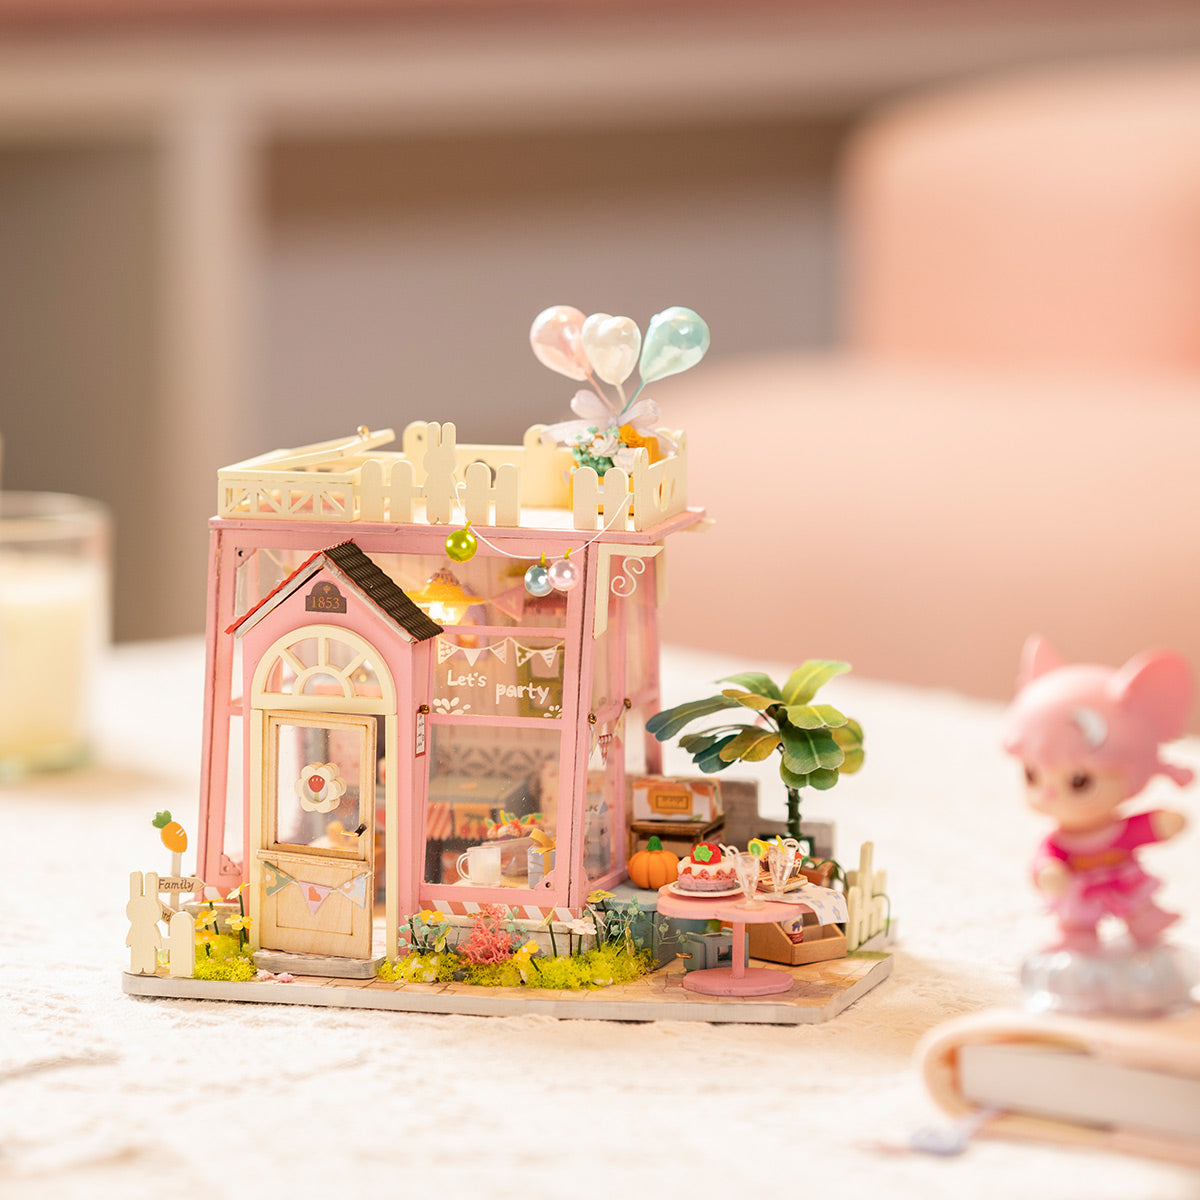 Maison miniature - Maison de fêtes - Rolife